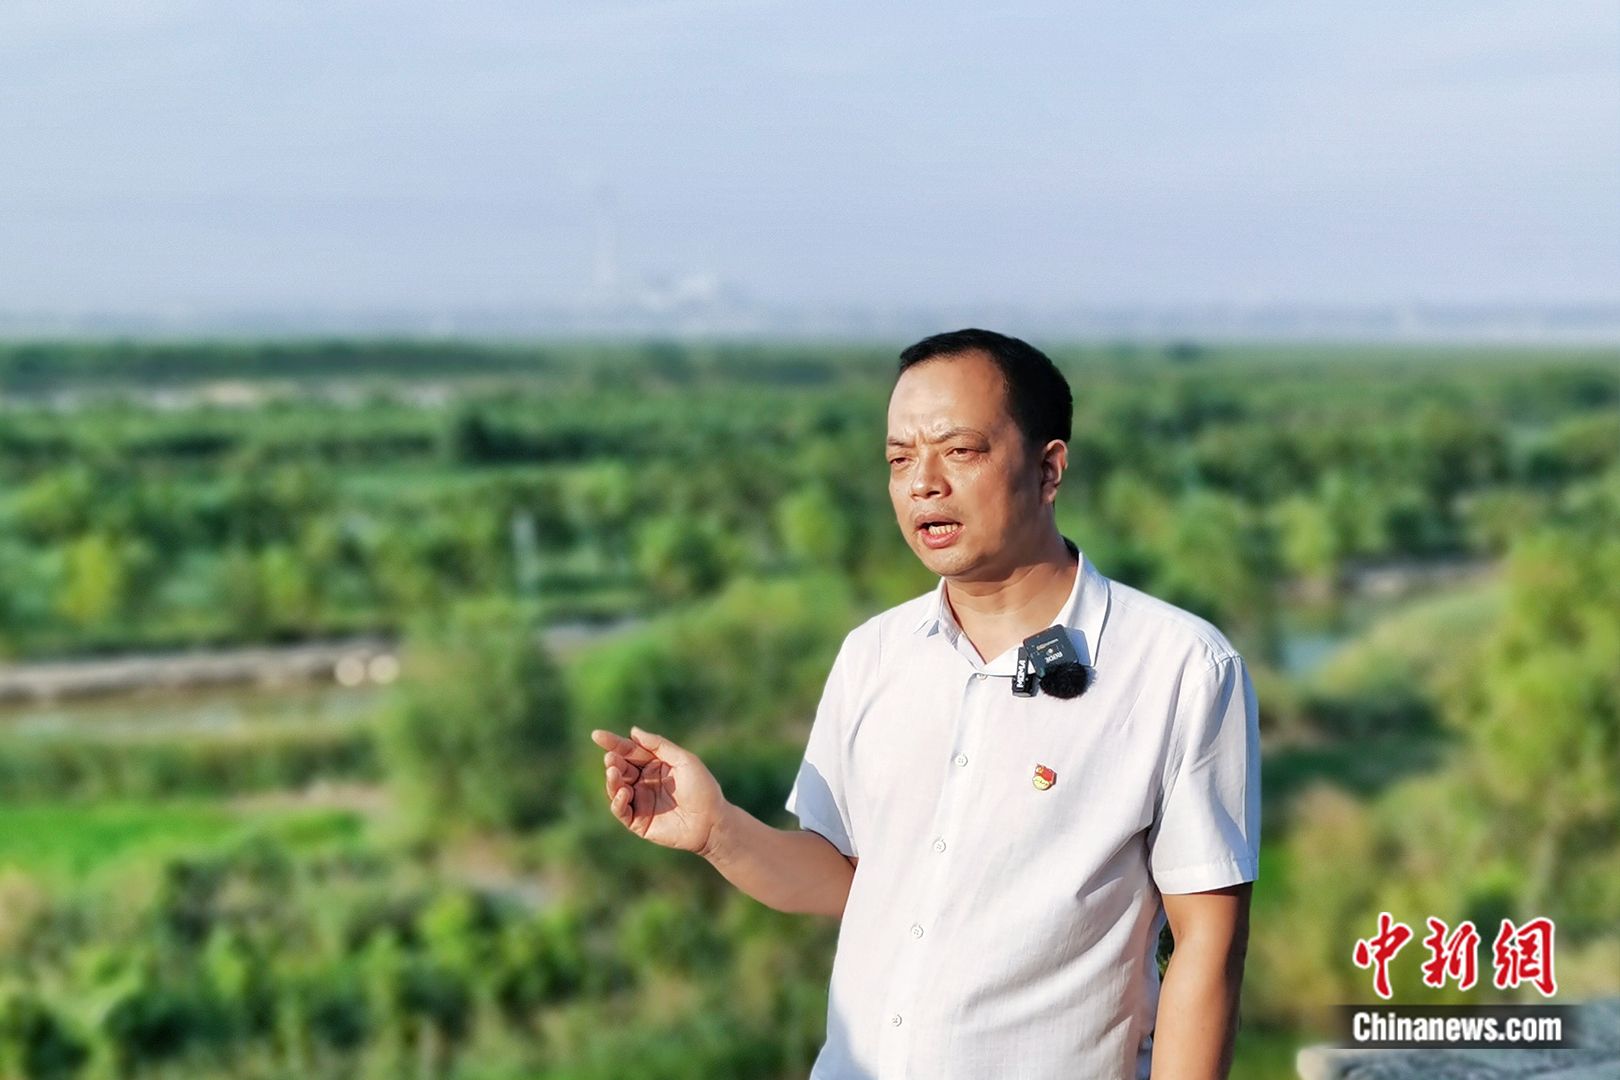 潼关县湿地保护中心主任刘鹏接受采访。黄钰涵 摄